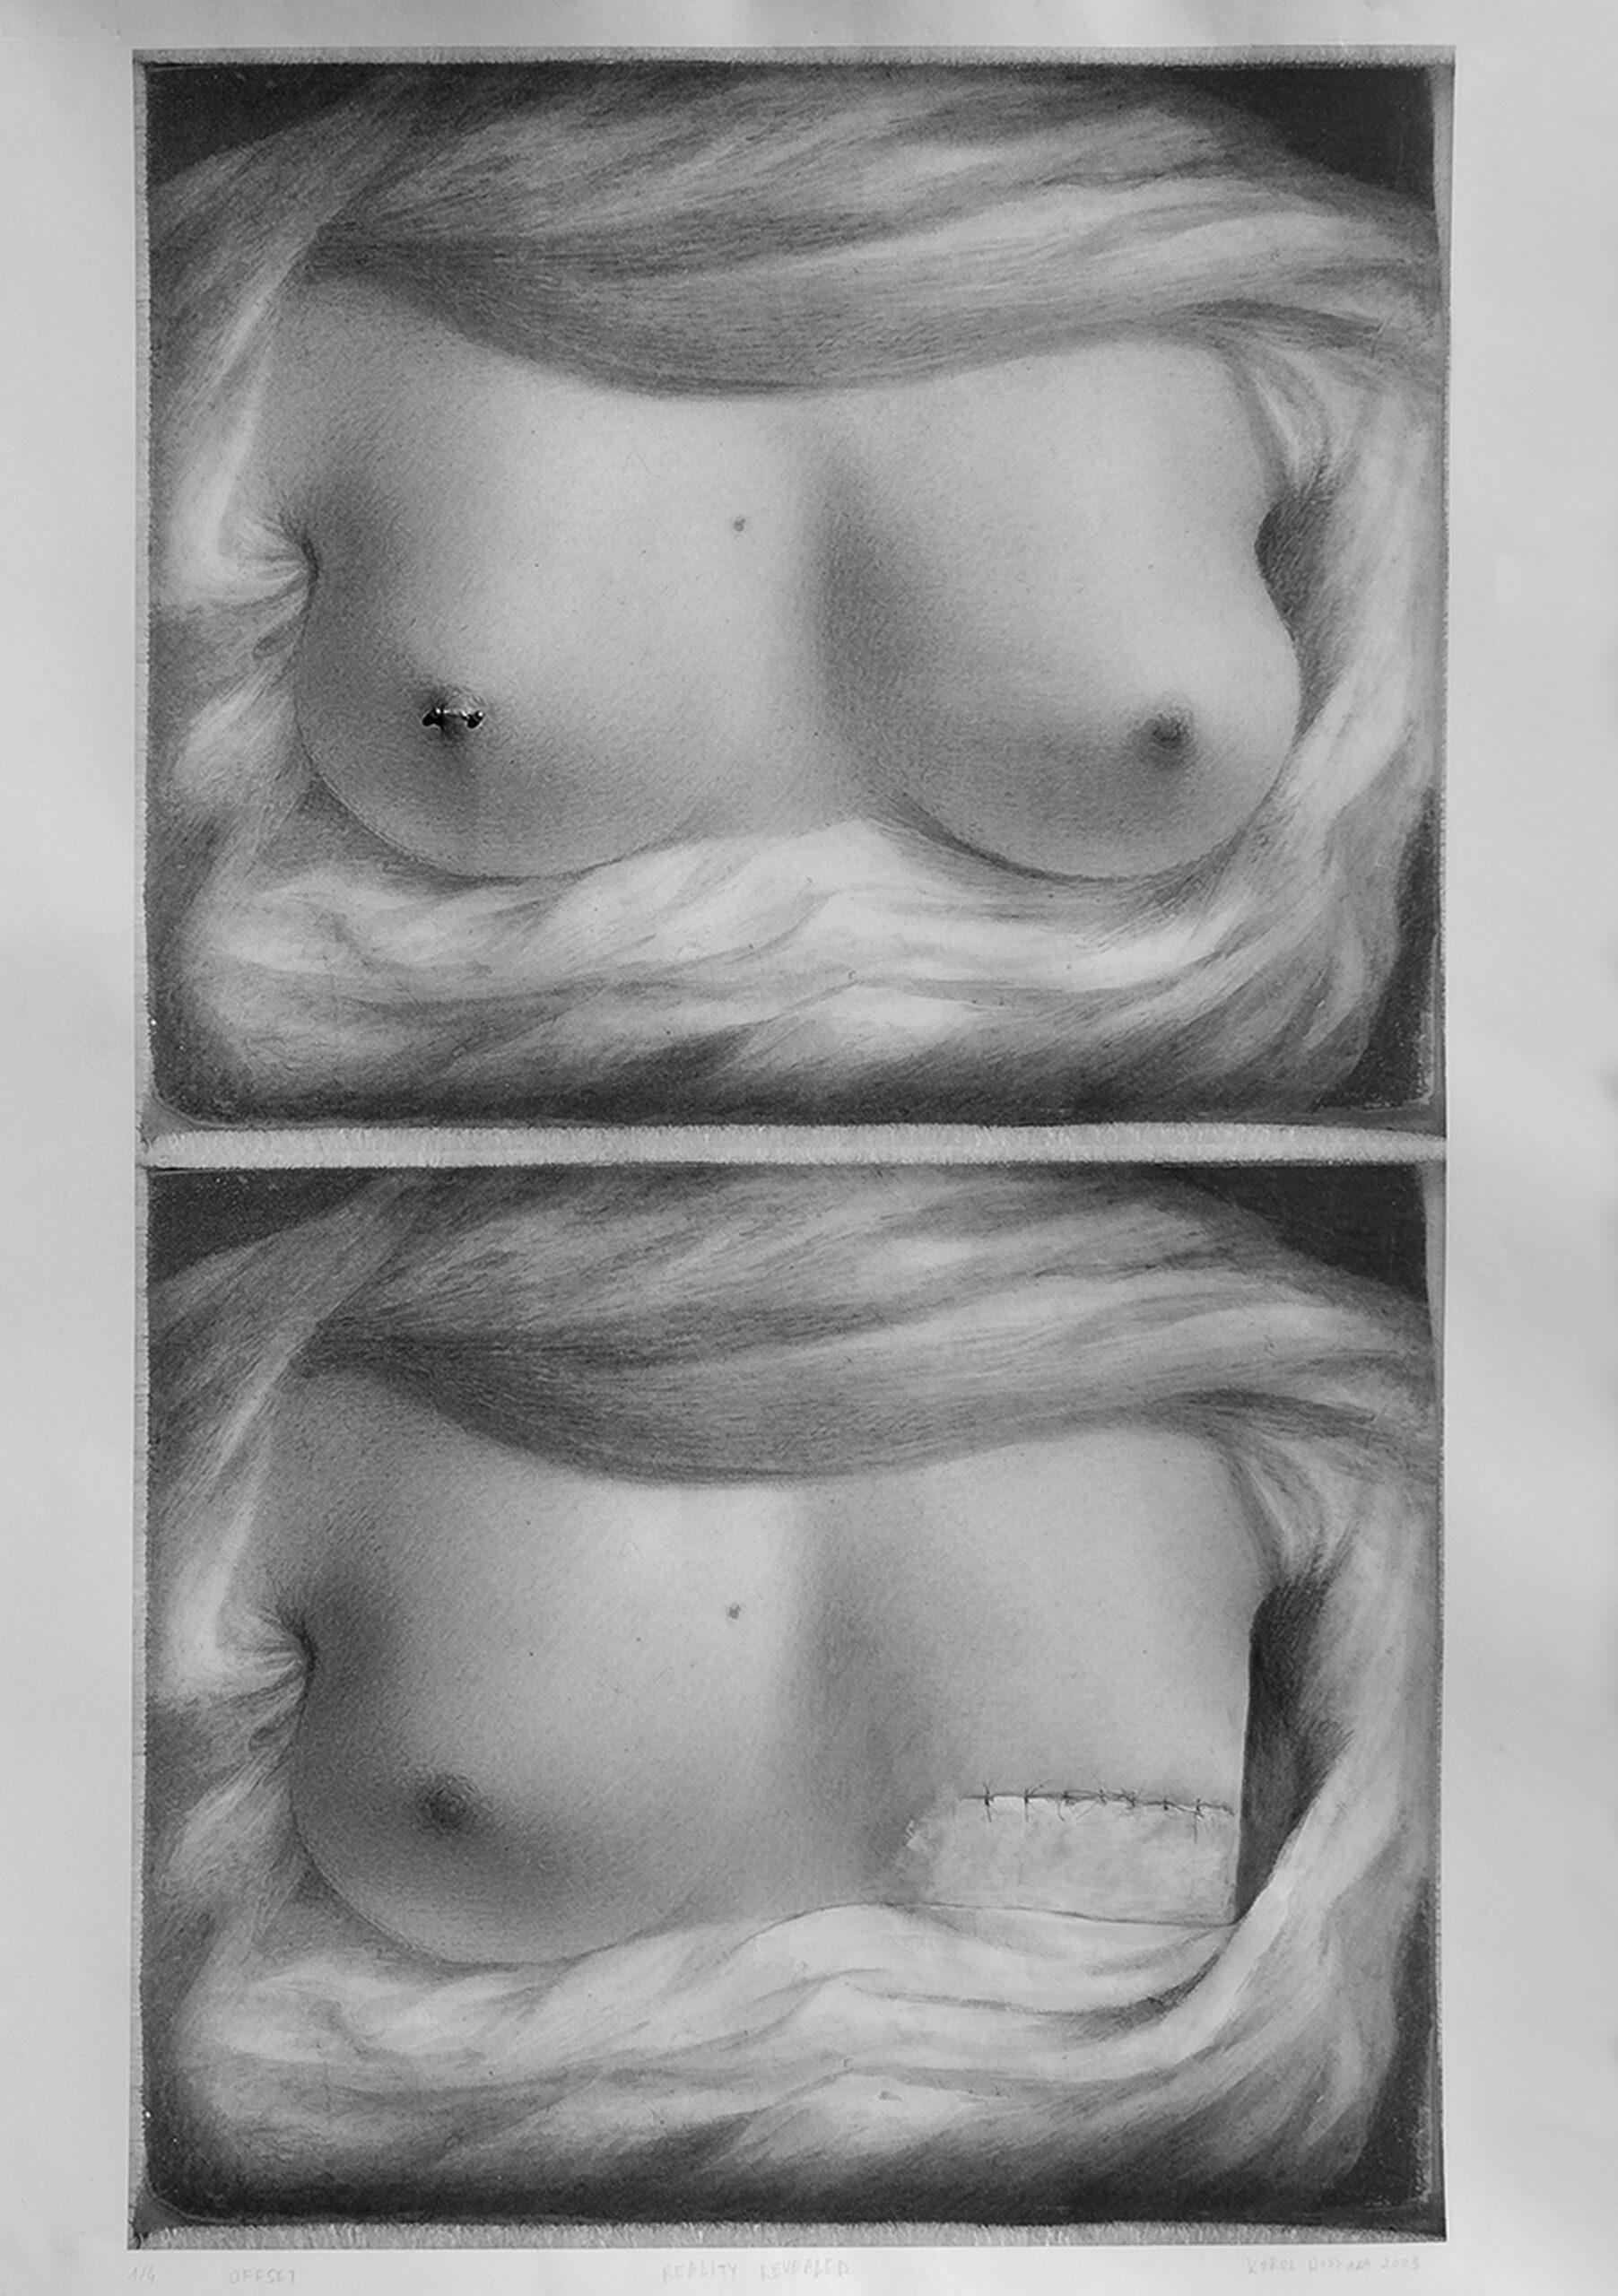 Obraz przedstawia dwie kopie namalowanego torsu kobiety z nagimi piersiami. W górnej kopii dodany jest kolczyk w sutku, w dolnej kopii jedną pierś zastępują szwy. Obraz jest czarno biały